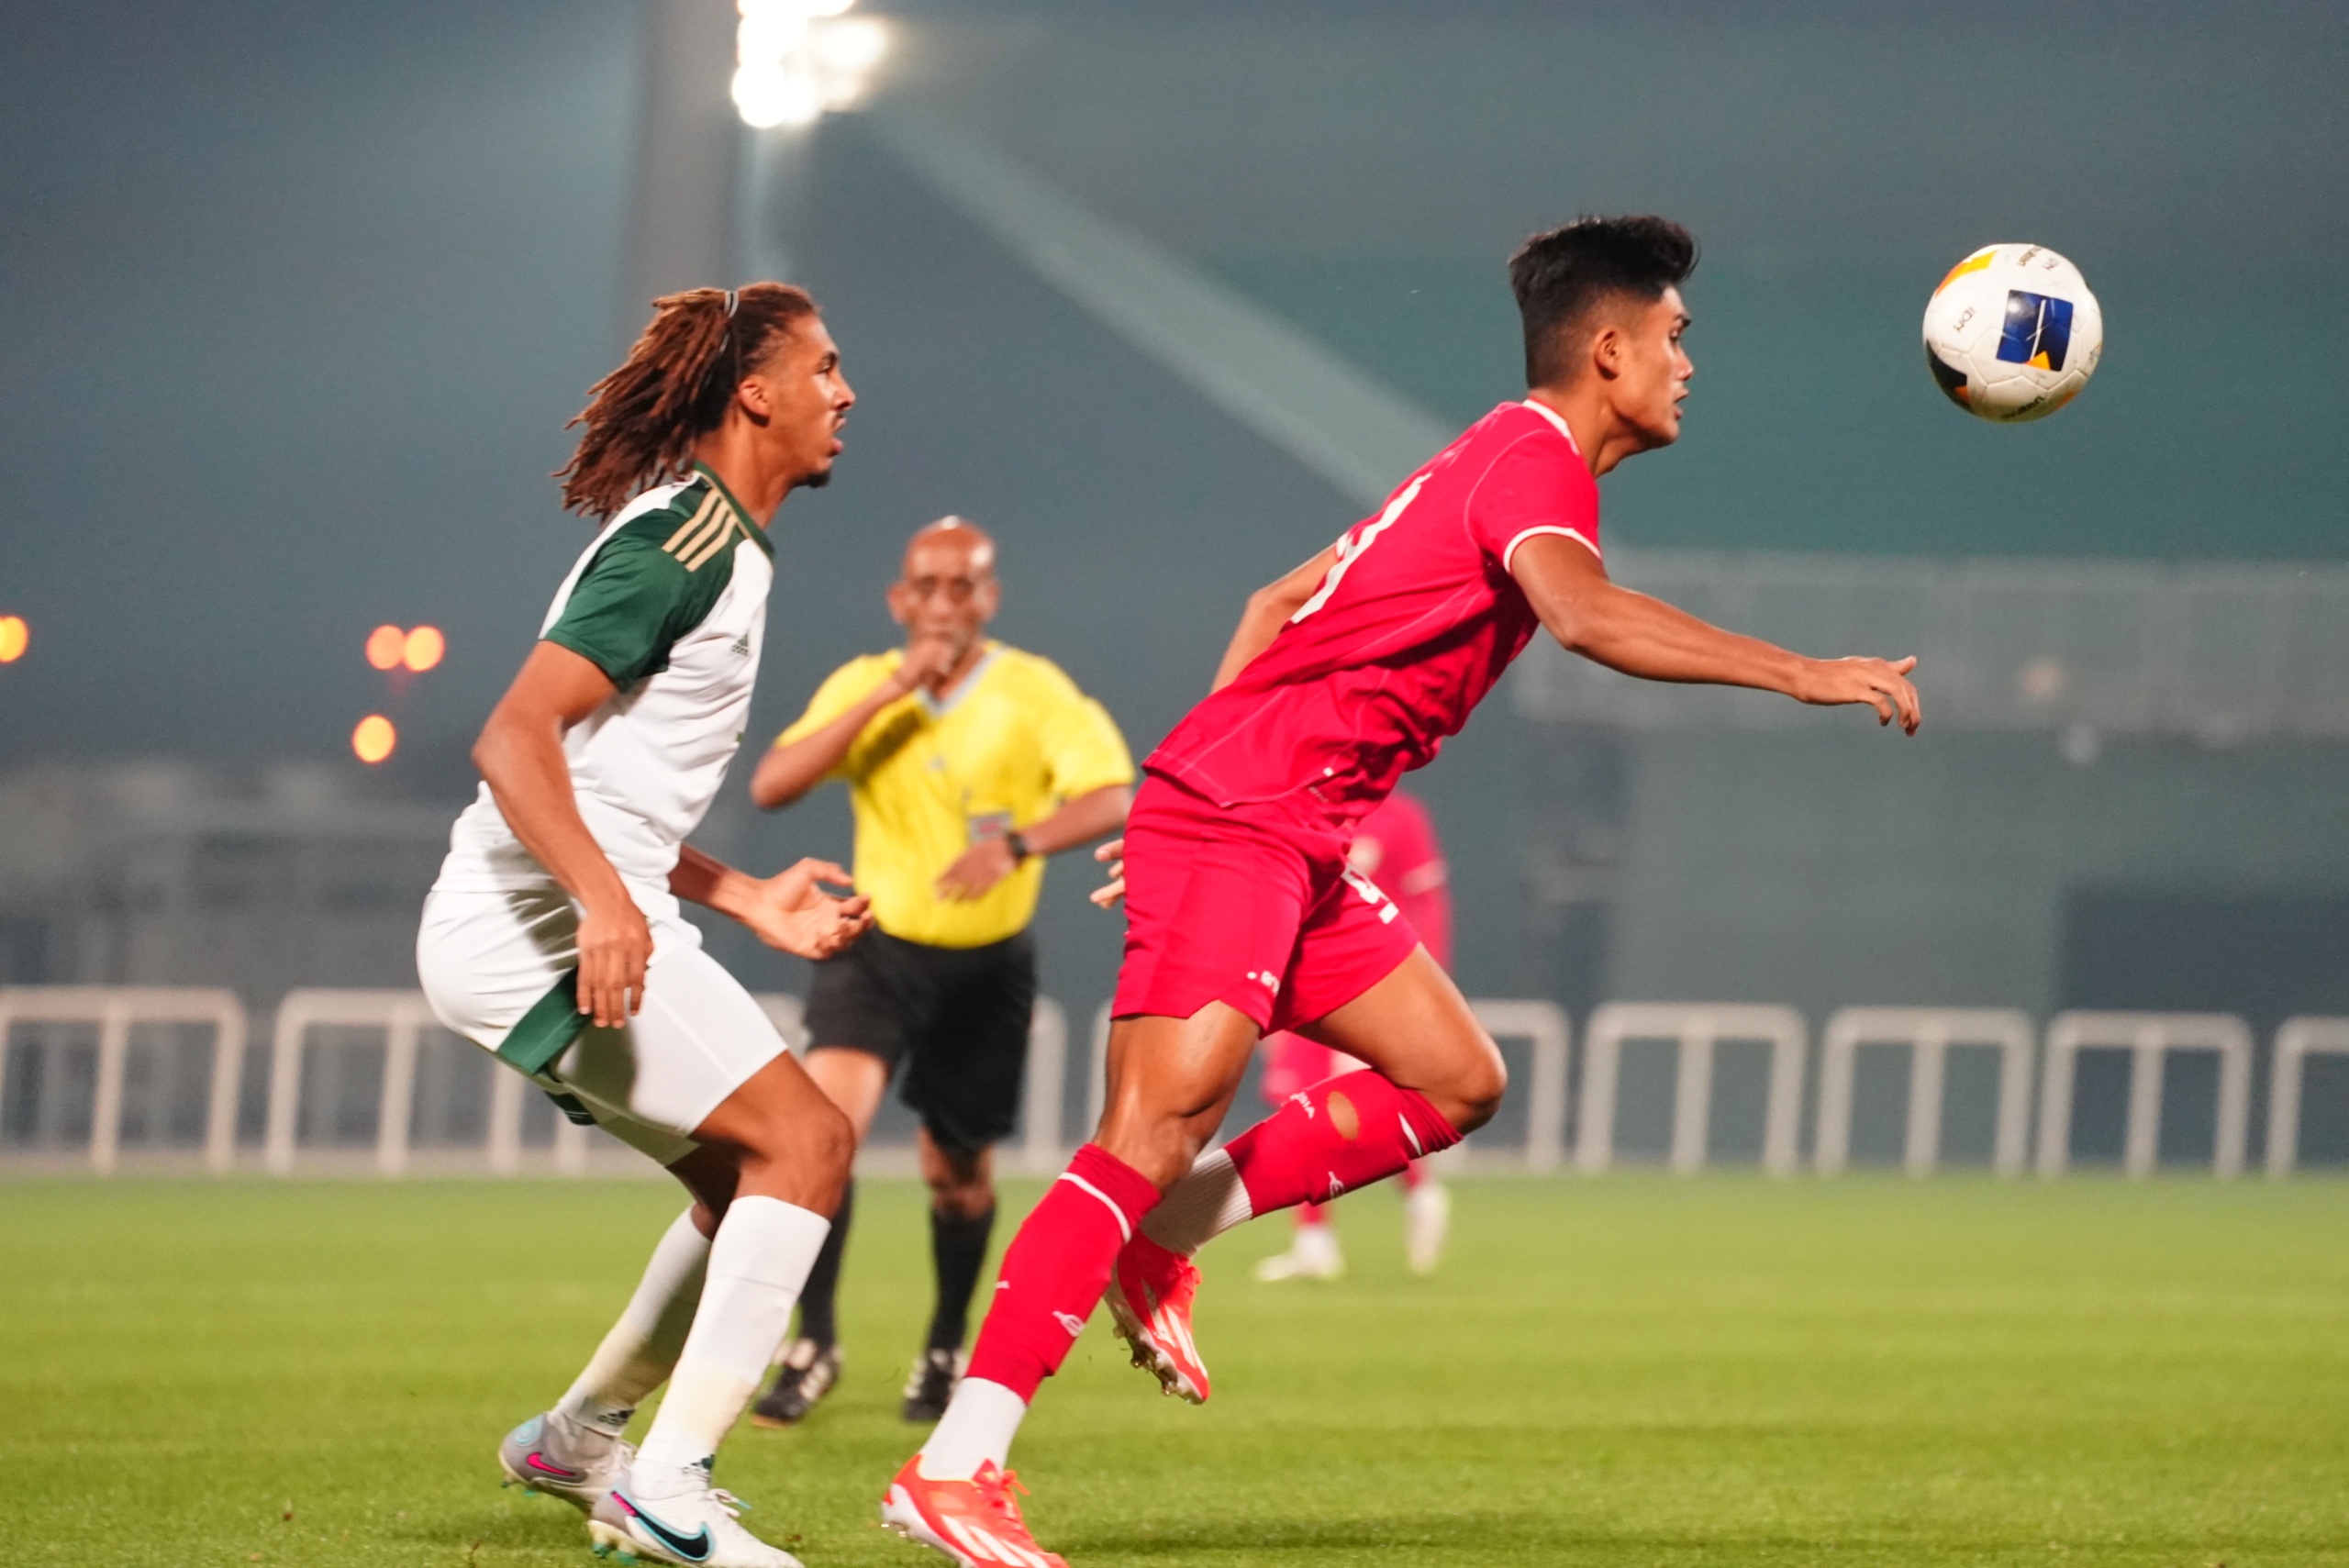 Penyerang timnas Indonesia U-23, Ramadhan Sananta mencoba mengontrol bola saat dihadang pemain bertahan Arab Saudi U-23 dalam pertandingan uji coba jelang Piala Asia U-23 yang berlangsung di The Sevens Stadium, Dubai, Uni Emirat Arab, Jumat (05/04/2024). Foto: PSSI